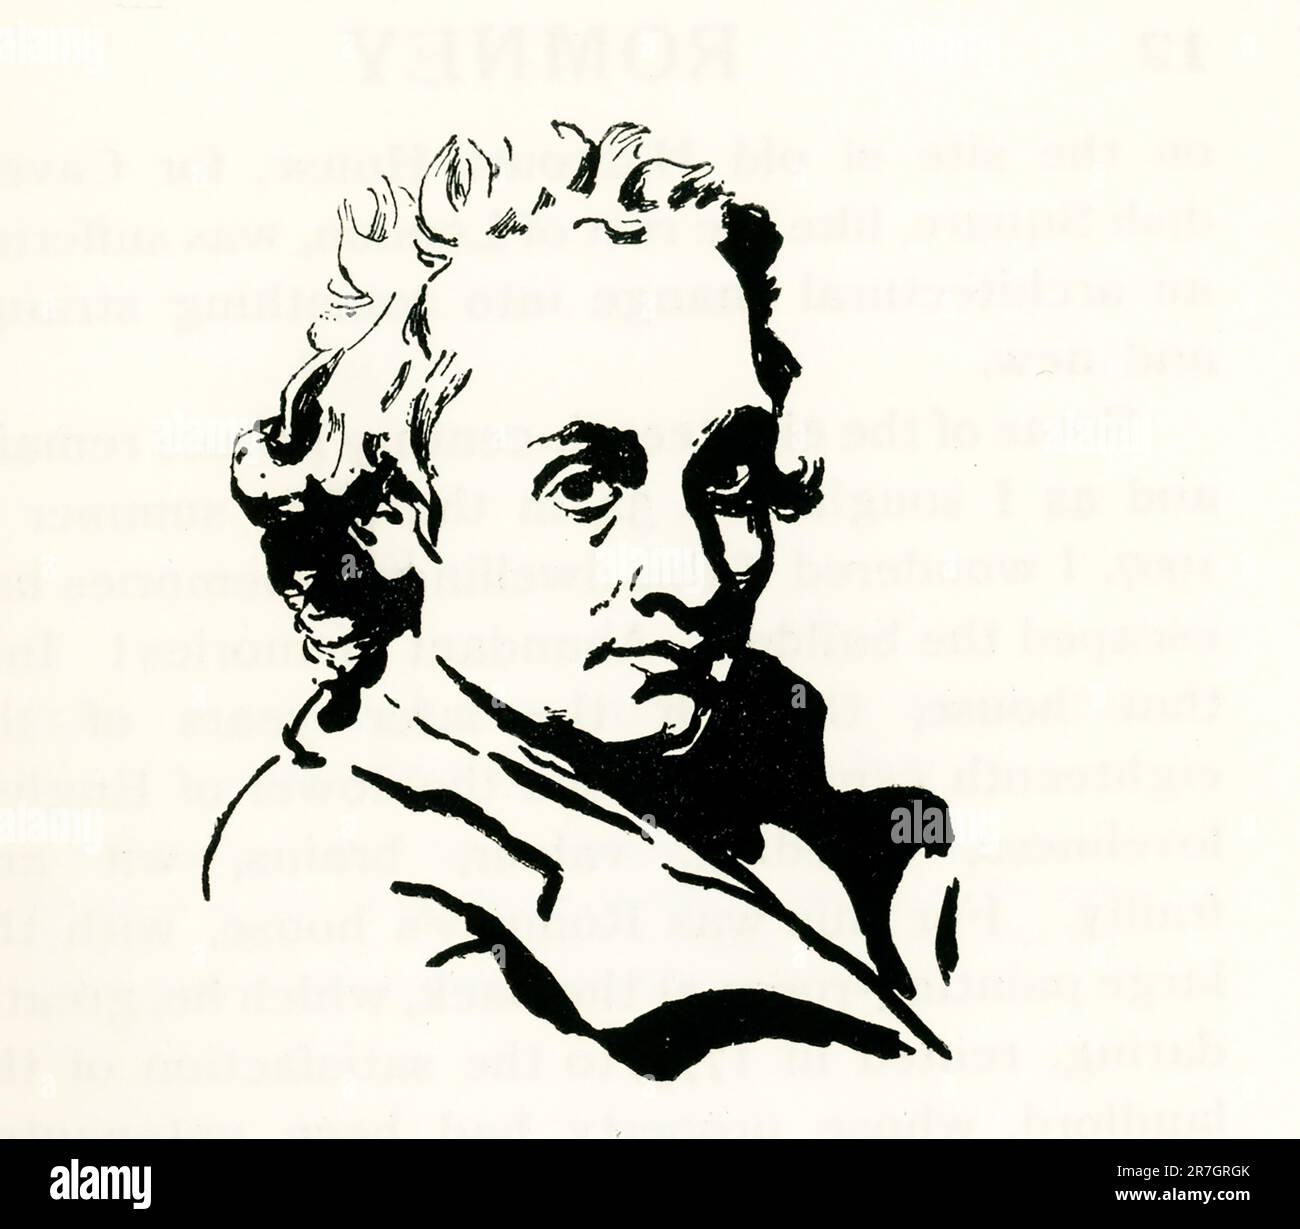 George Romney (1734-1802) était un peintre de portrait anglais. Il a été l'artiste le plus à la mode de son époque, peignant de nombreuses personnalités de la société – y compris sa muse artistique, Emma Hamilton, maîtresse de Lord Nelson. Banque D'Images